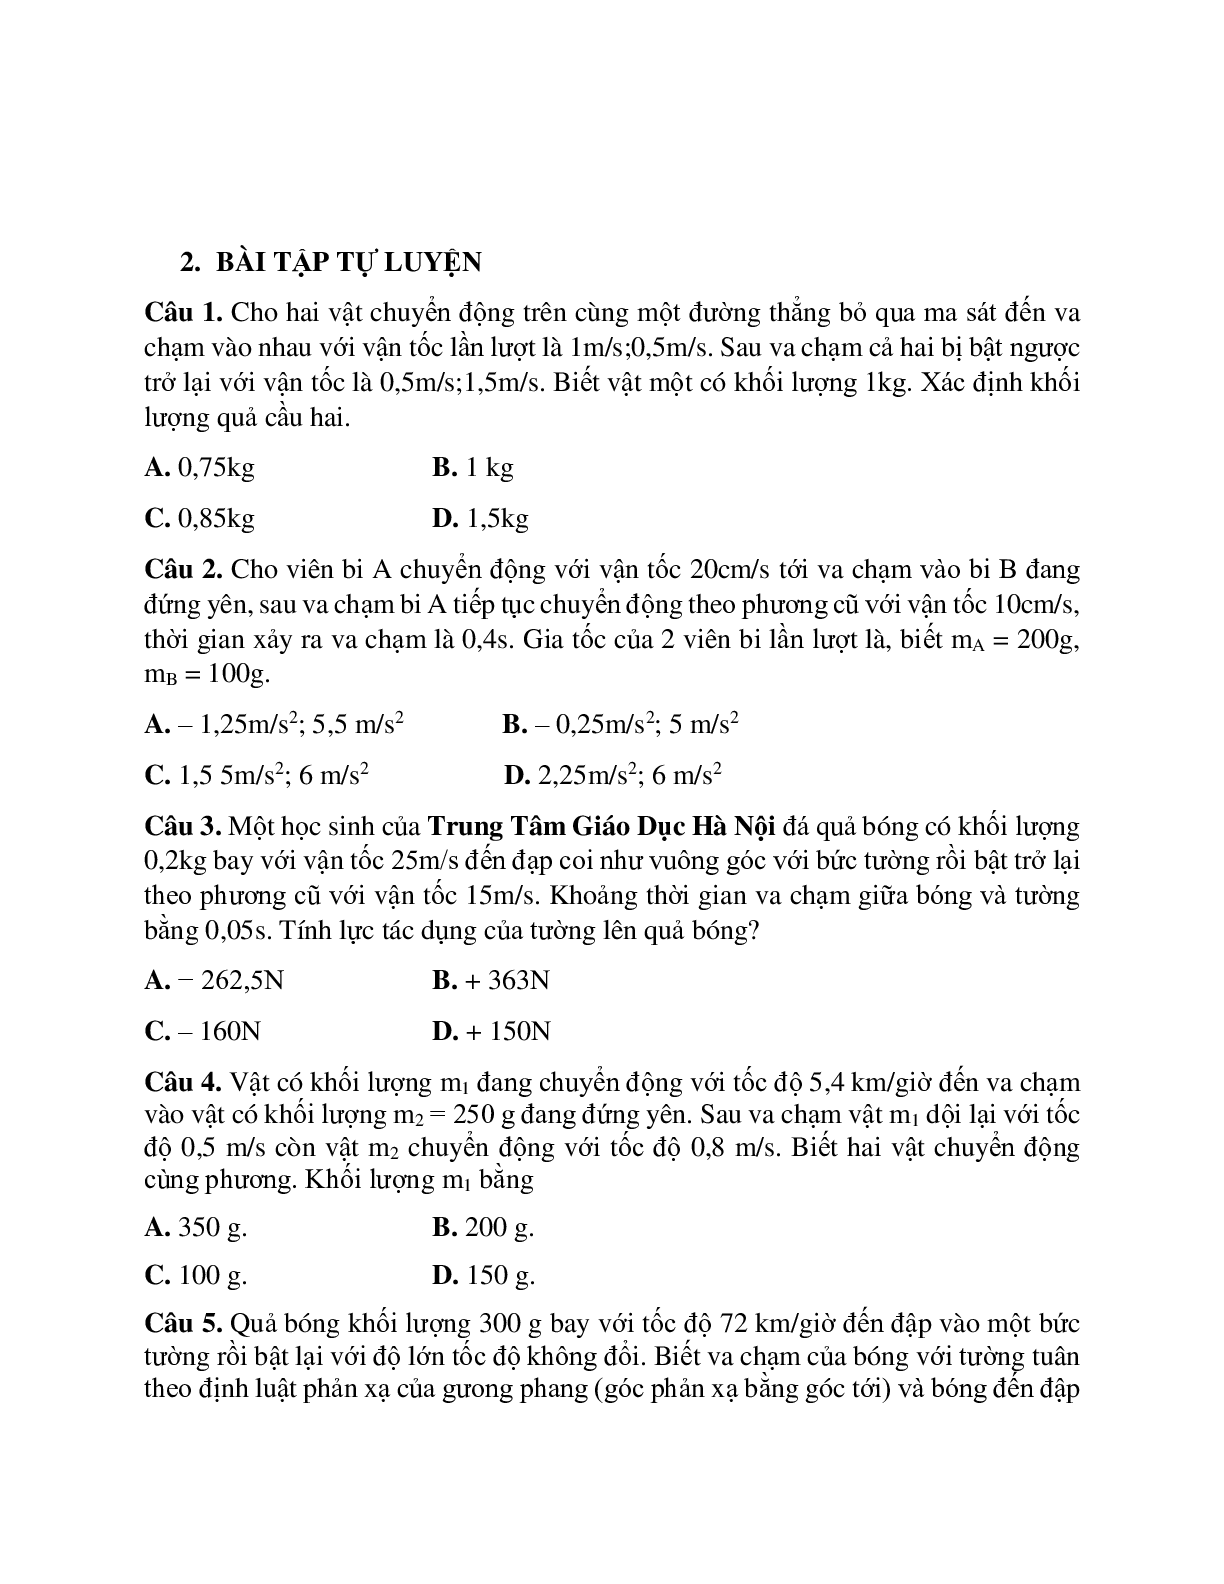 Phương pháp giải và bài tập về Bài toán hai vật va chạm nhau - định luật III Newton chọn lọc (trang 3)